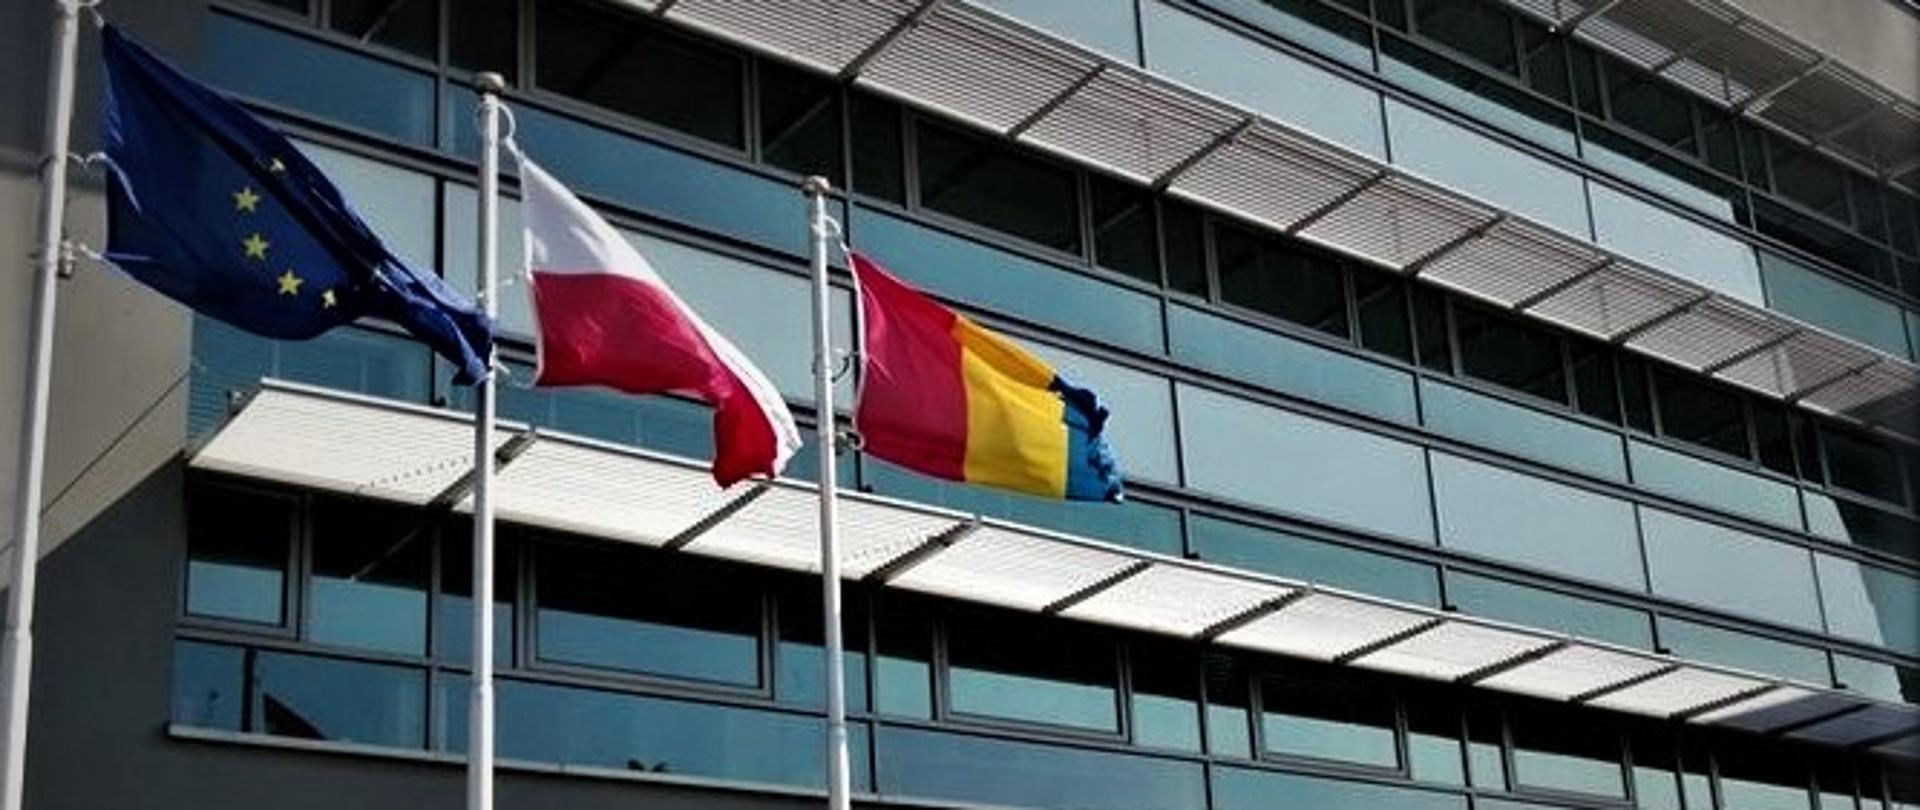 Szary budynek z oknami , na pierwszym planie trzy maszty z flagami , od lewej flaga Unii Europejskiej, w środku flaga Polski i flaga powiatu polkowickiego. 